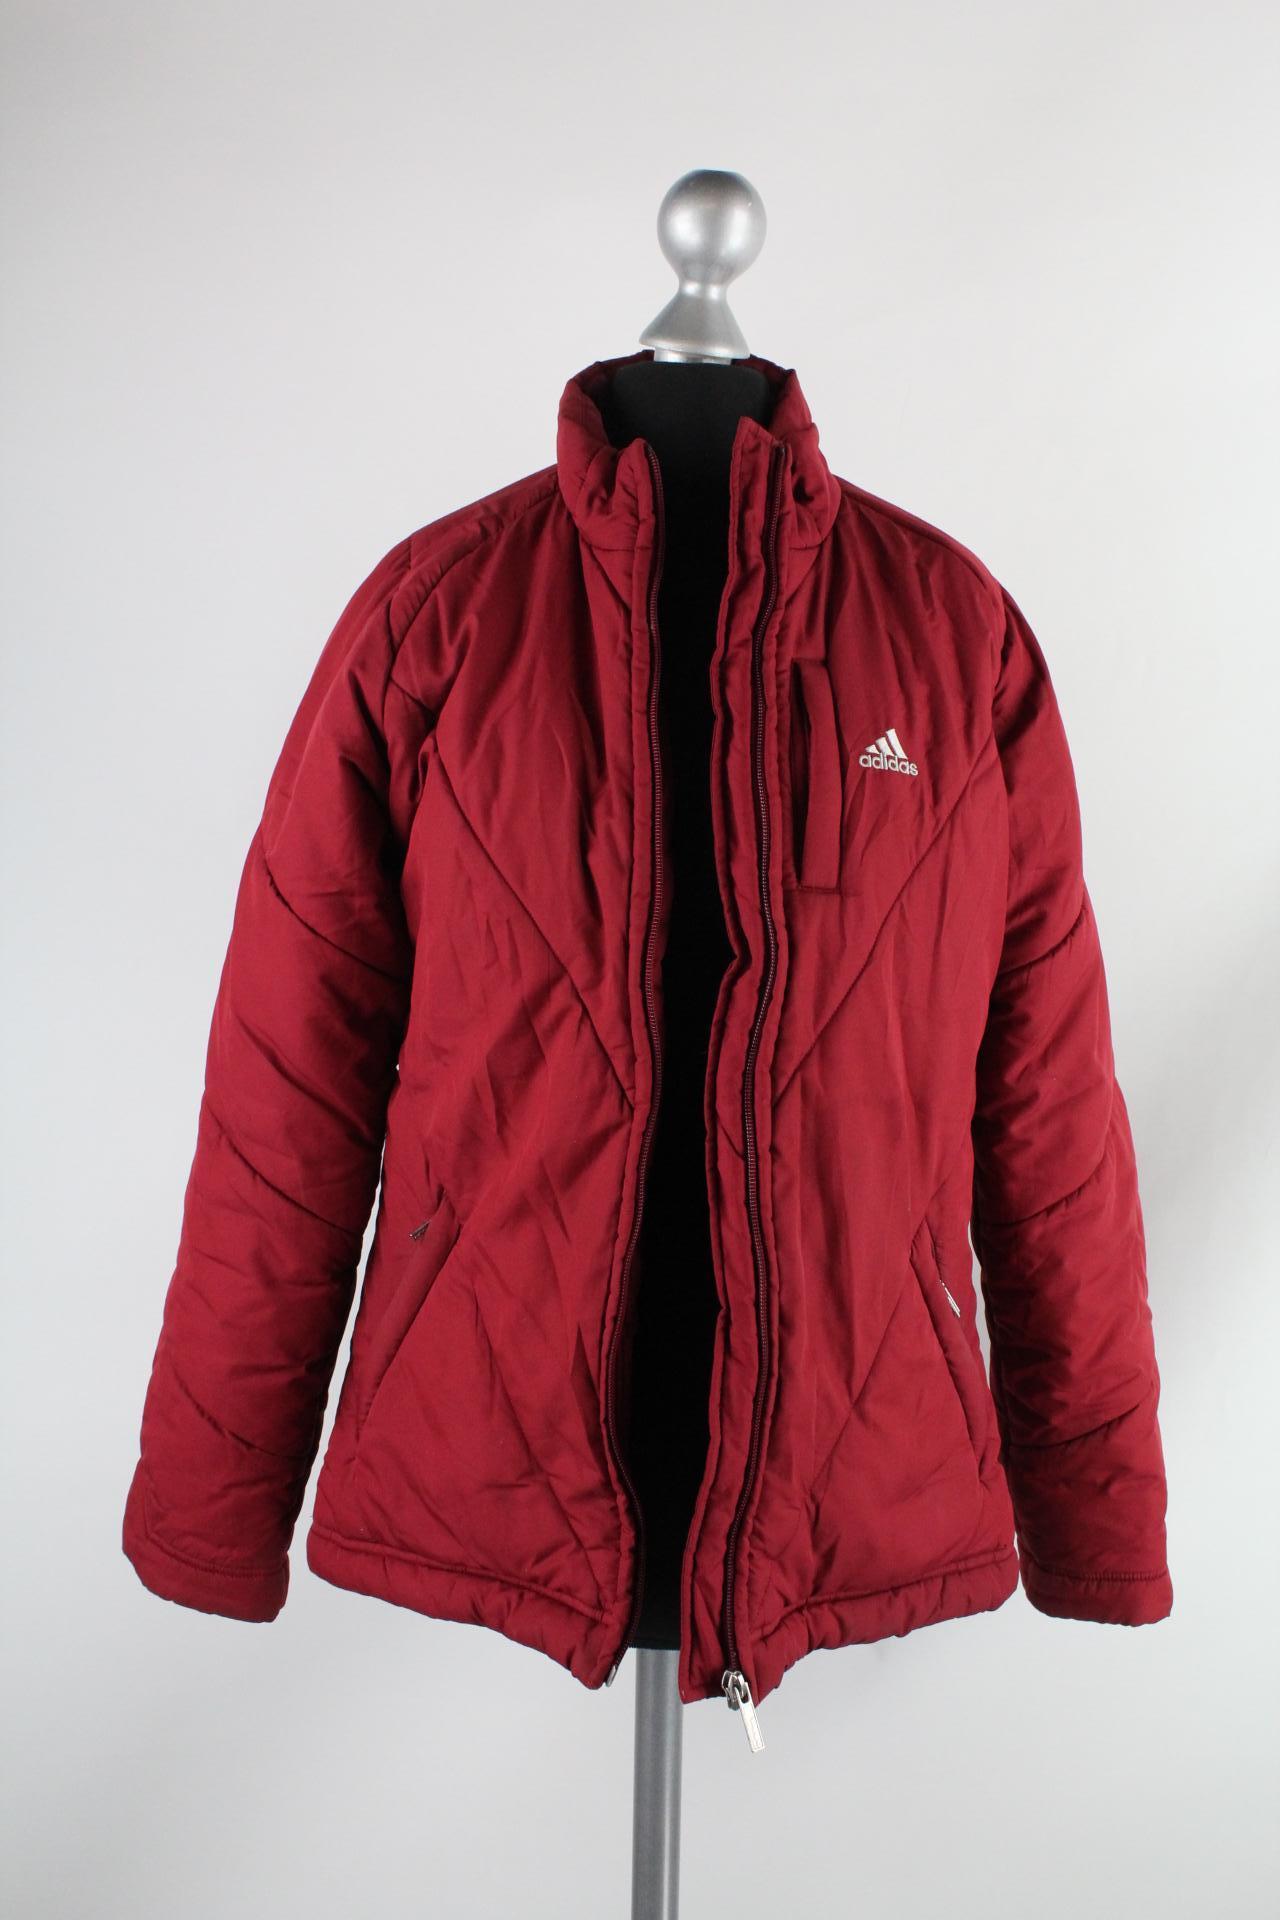 Adidas Damen-Anorak rot Größe 34